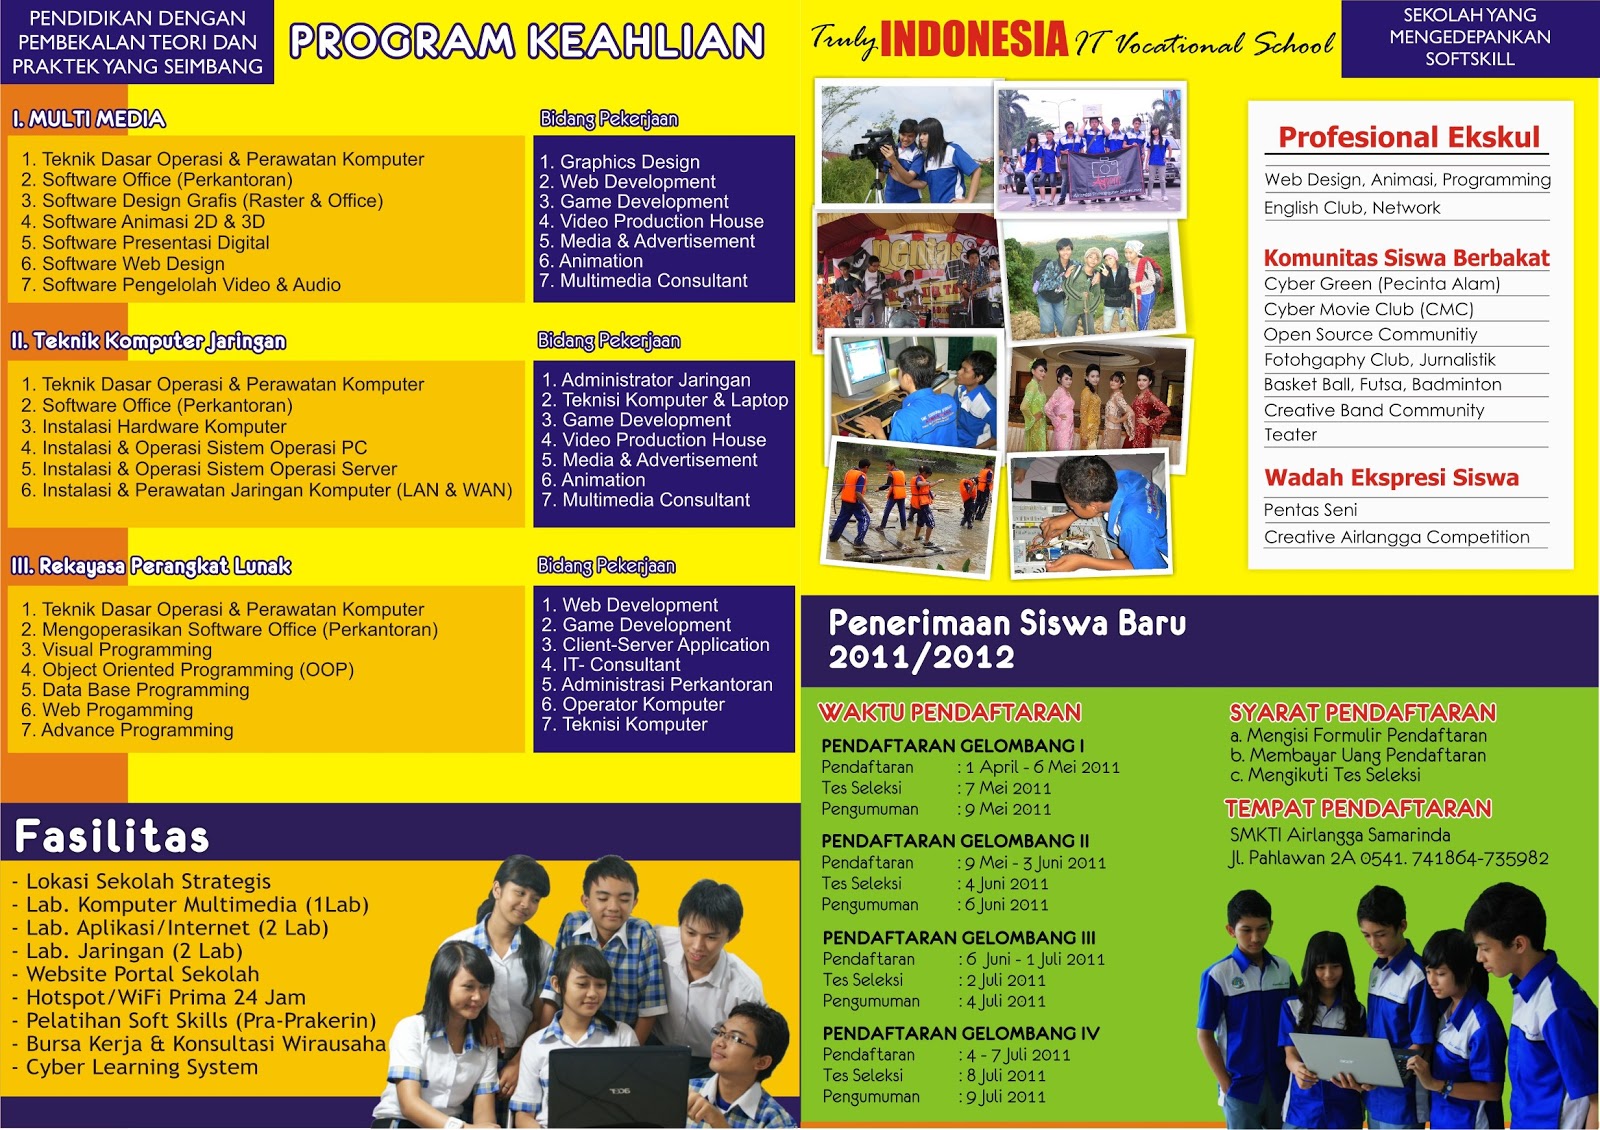 SMK TI Airlangga Samarinda: Download Brosur PSB 2011/2012 